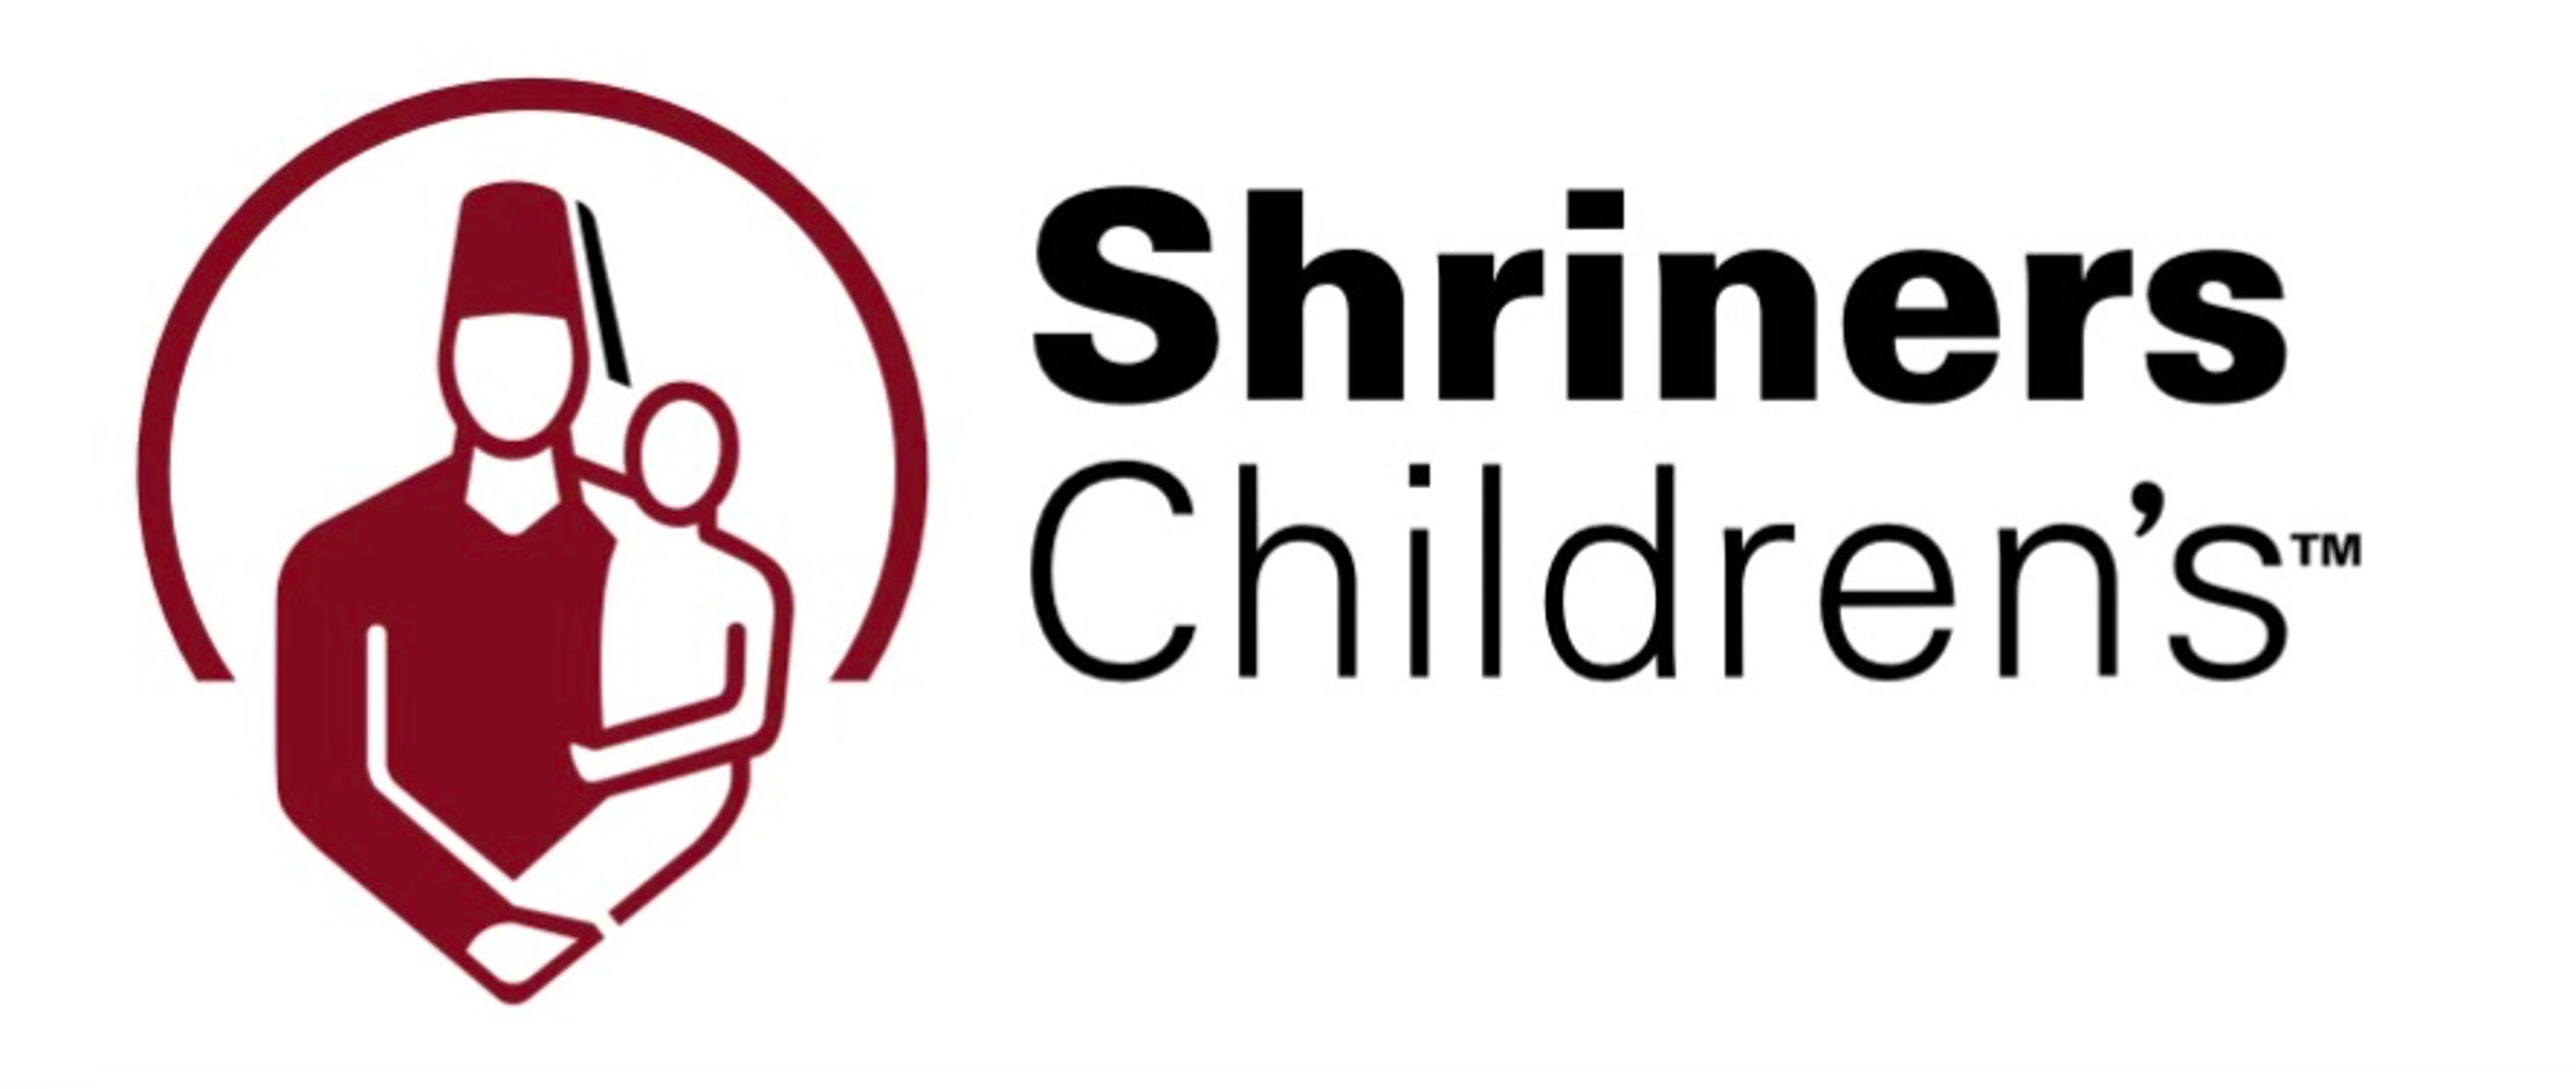 THE SHRINERS HOSPITAL FOR CHILDREN